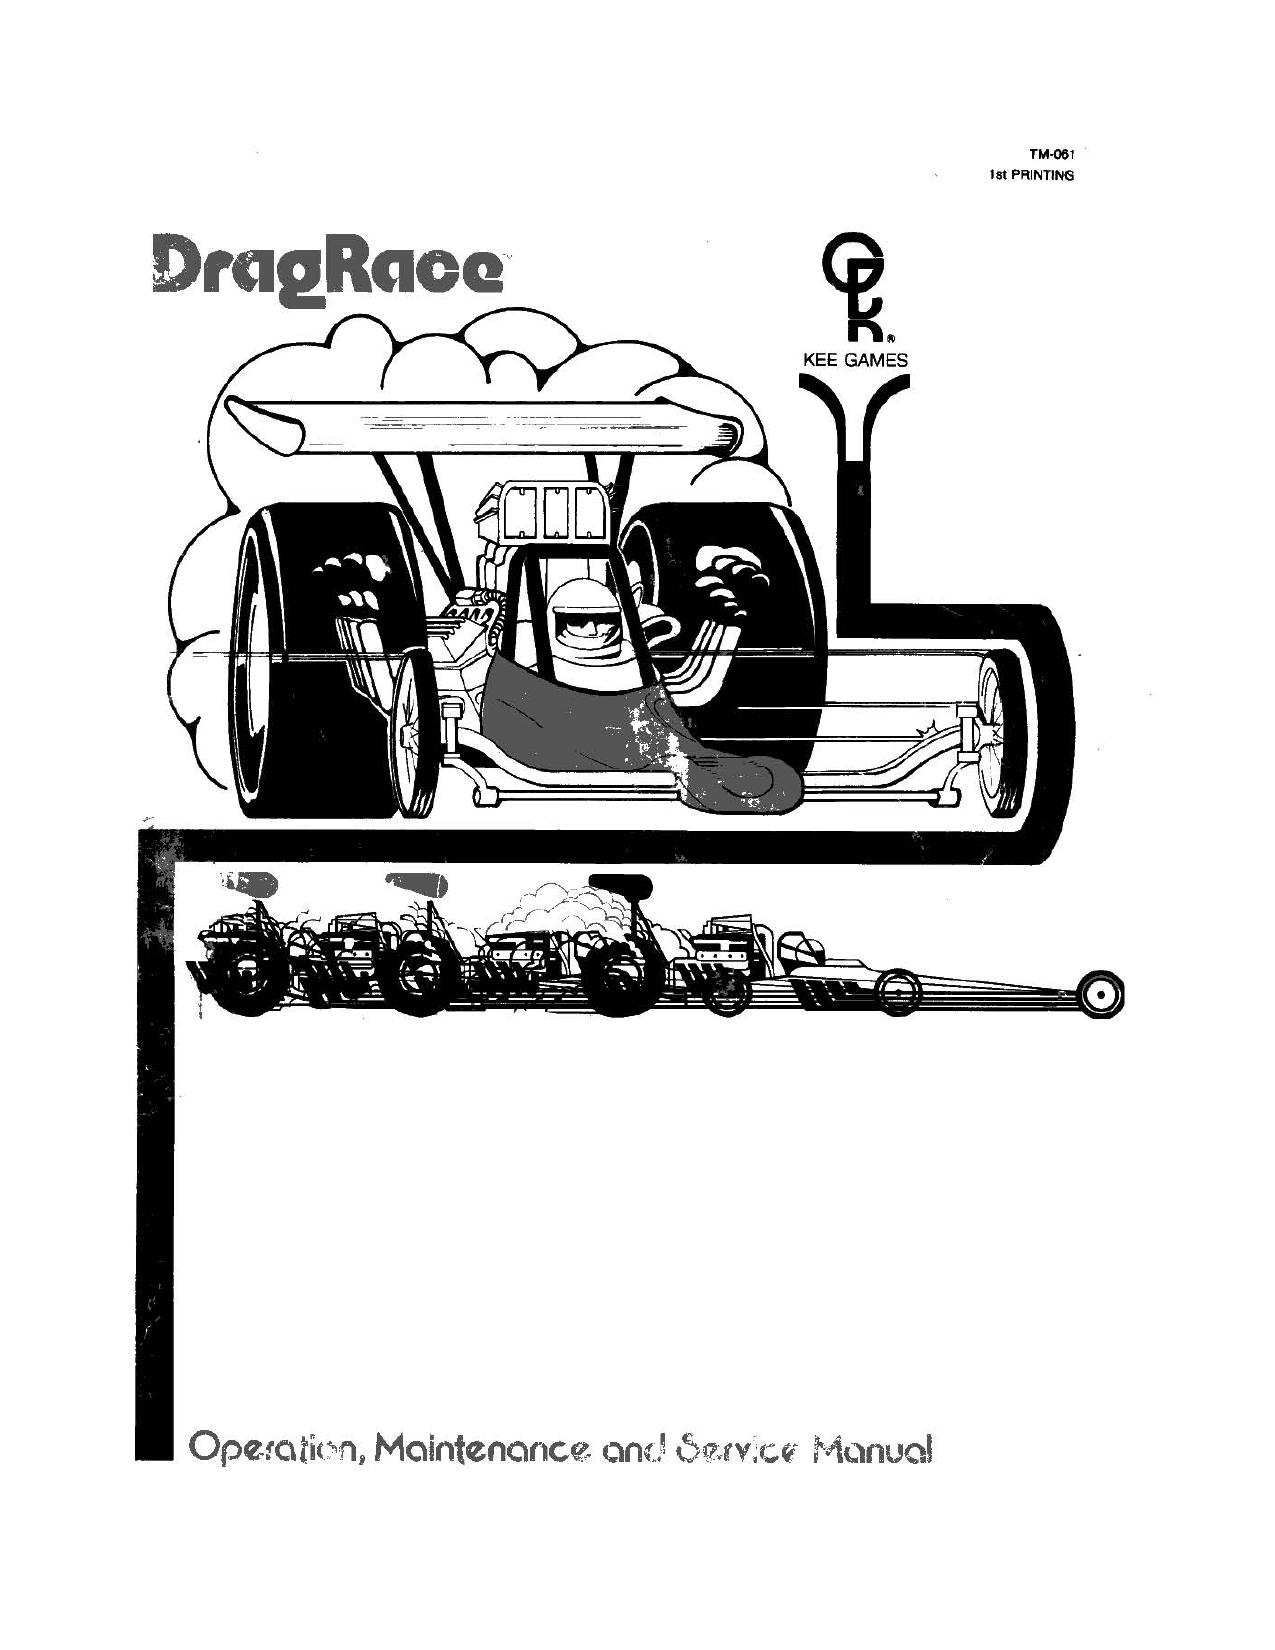 Drag Race (TM-061 1st Printing) (Op-Maint-Serv) (U)